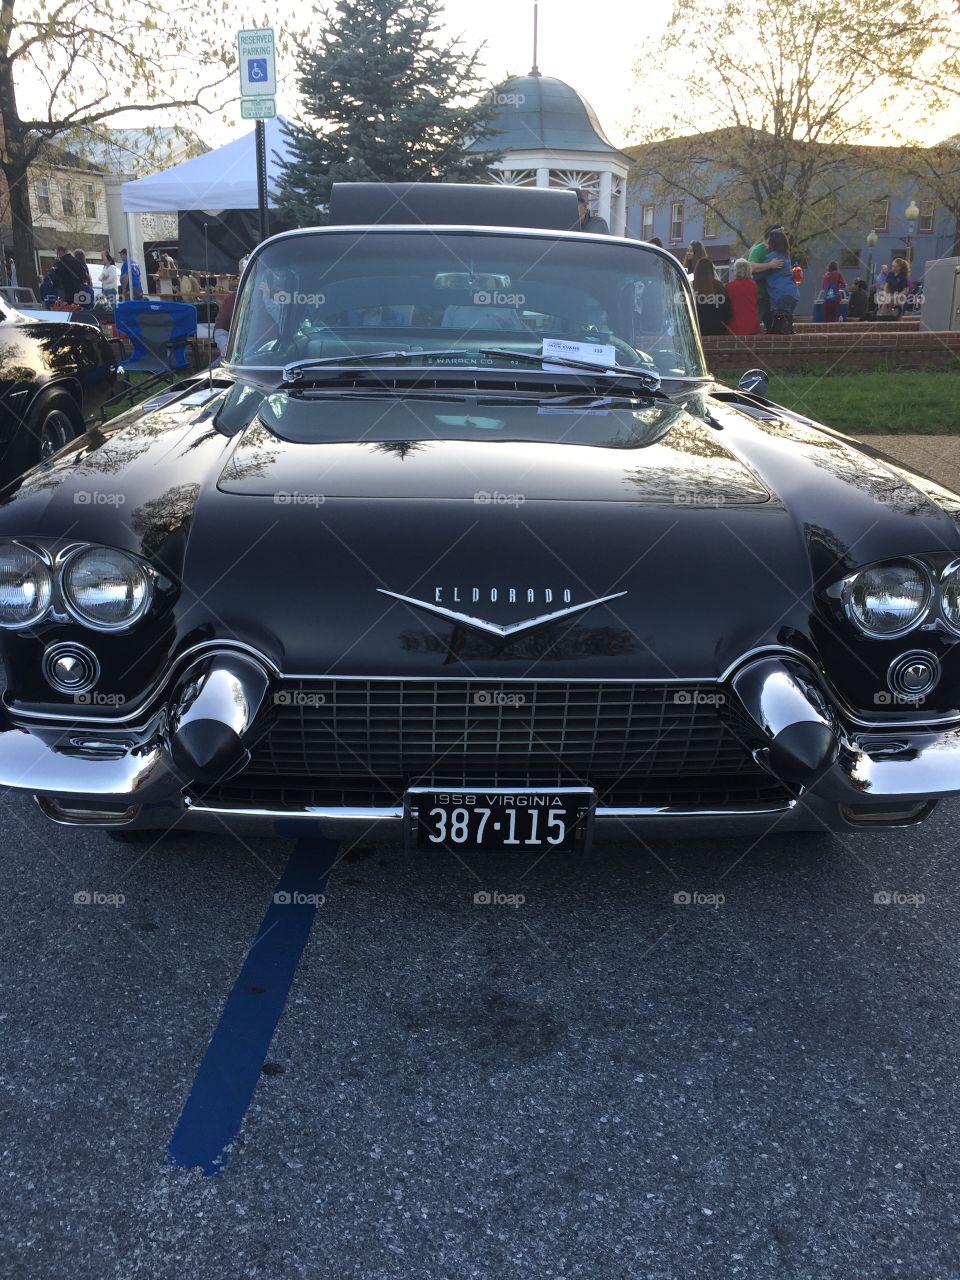 Antique car Eldorodo black 1950’s chrome 